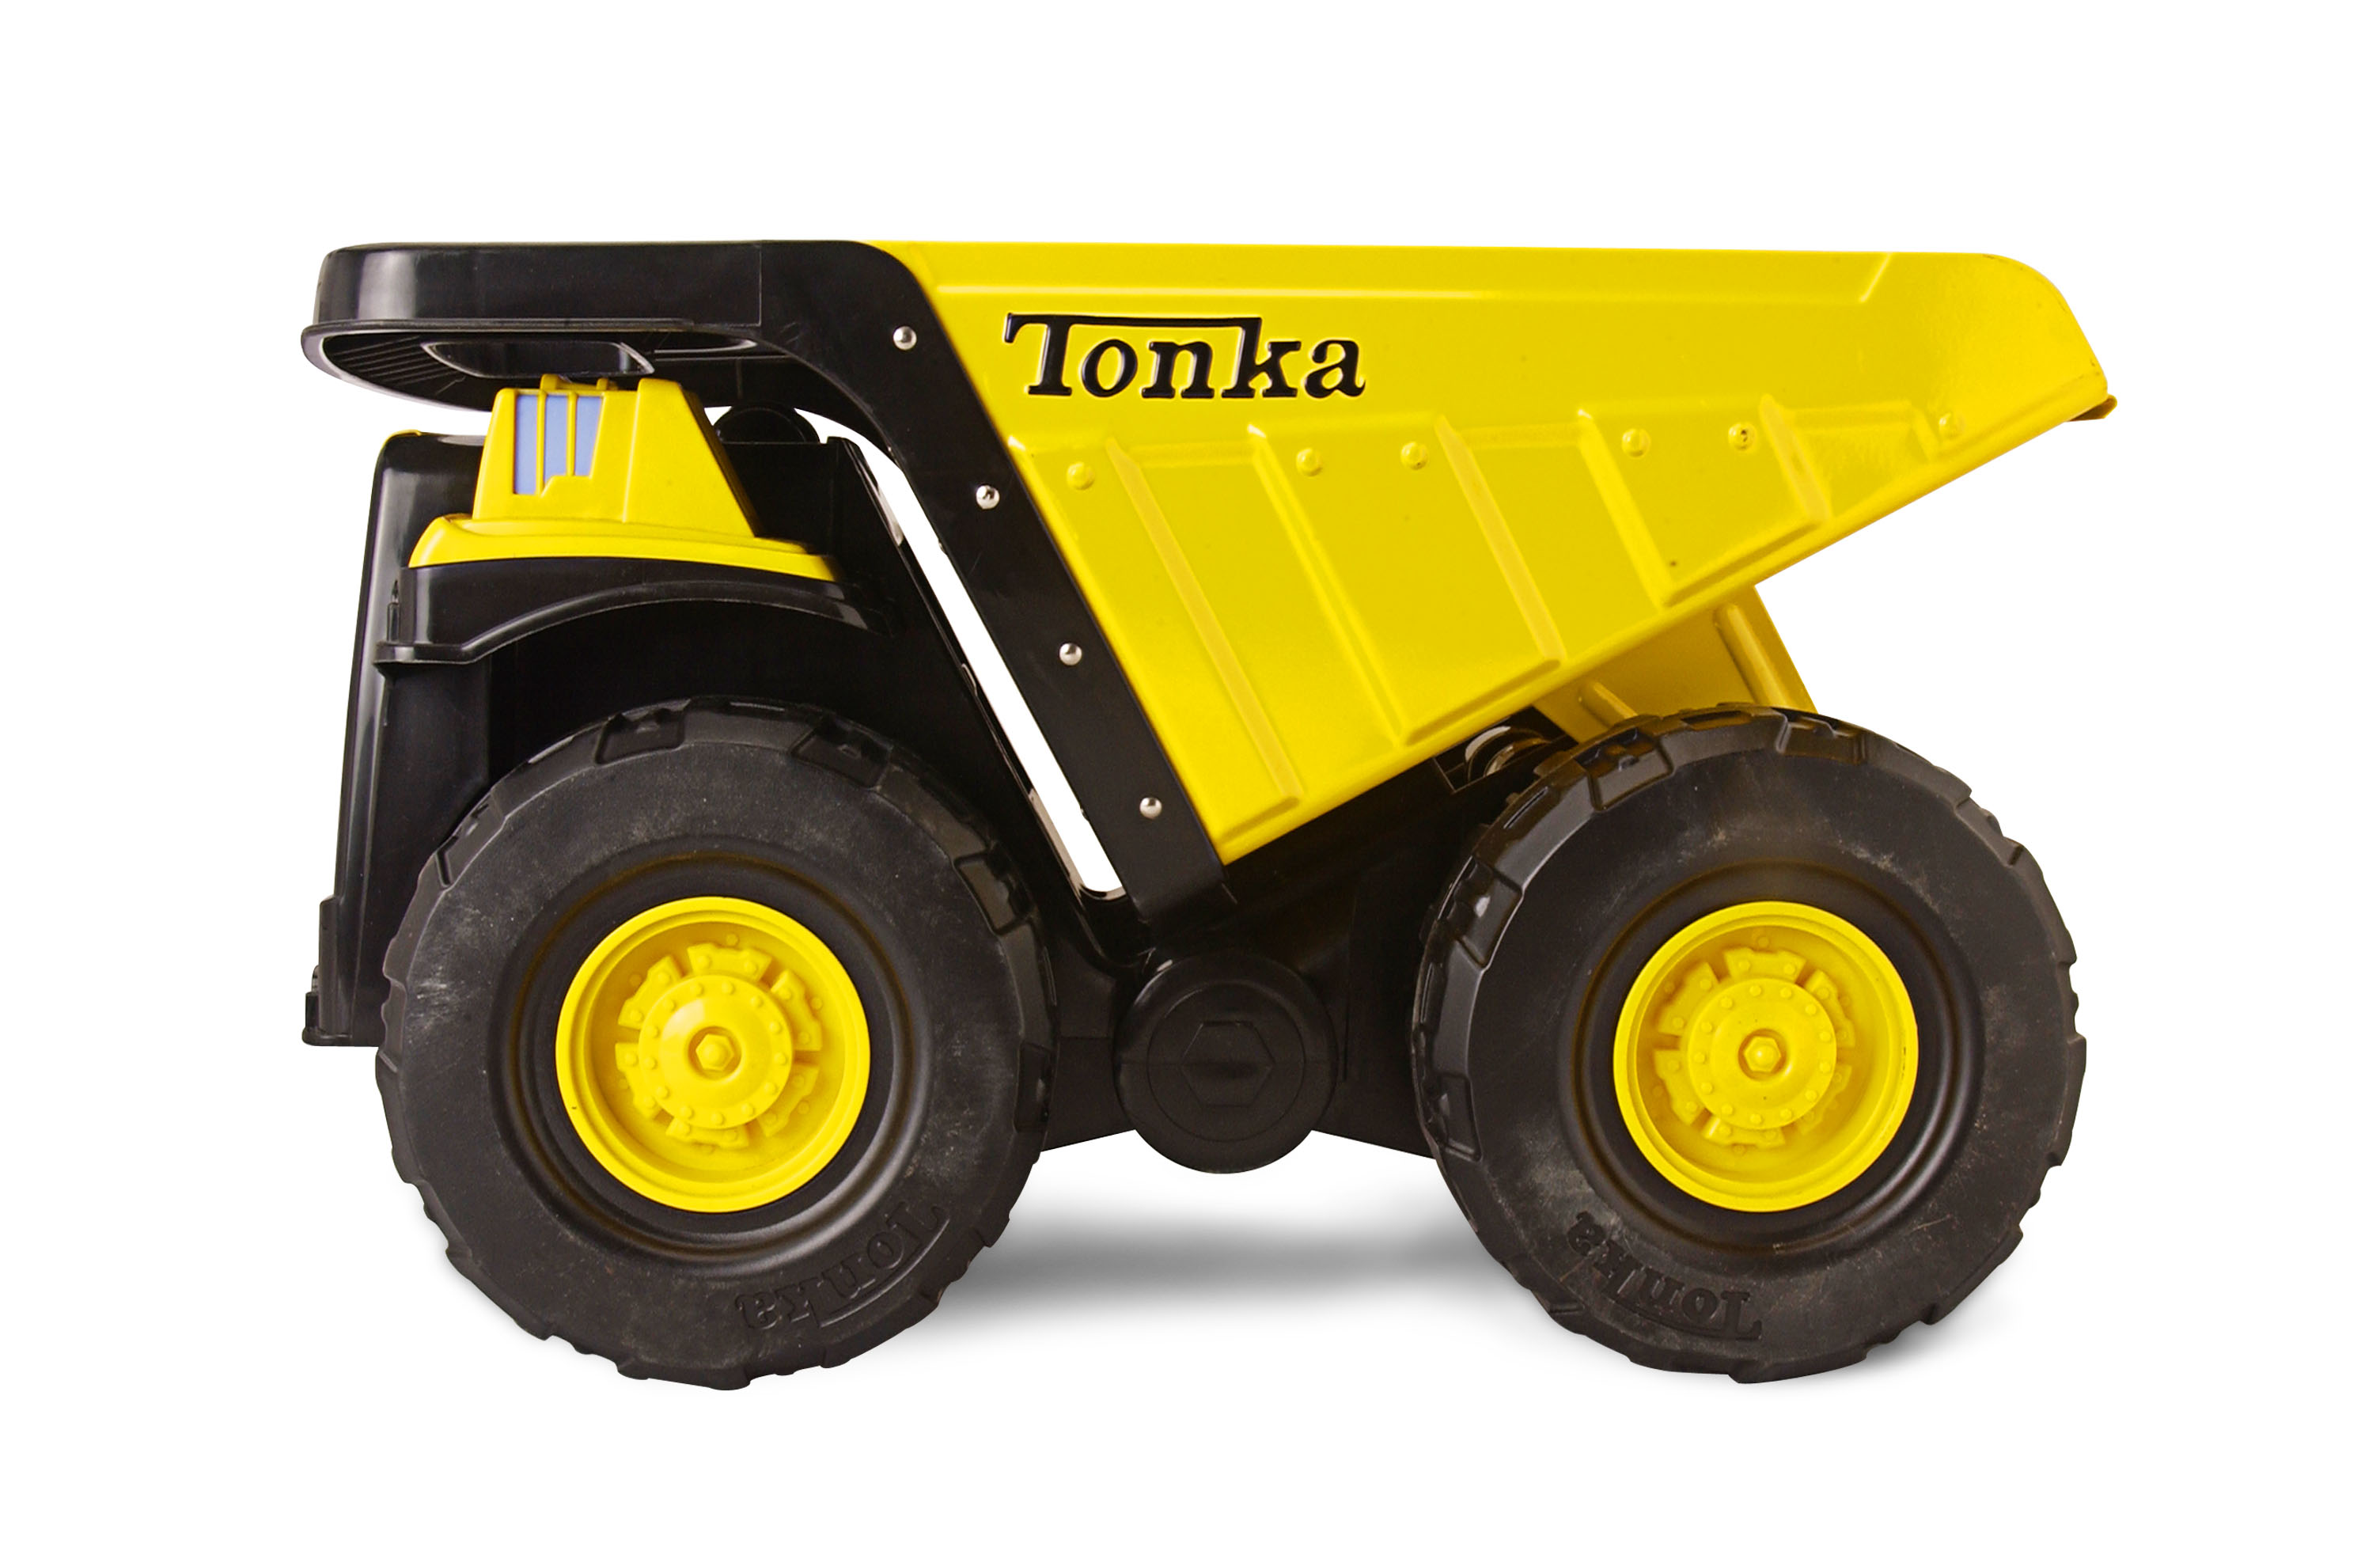 Tonka Steel; camiones de juguete garantizados de por vida 5